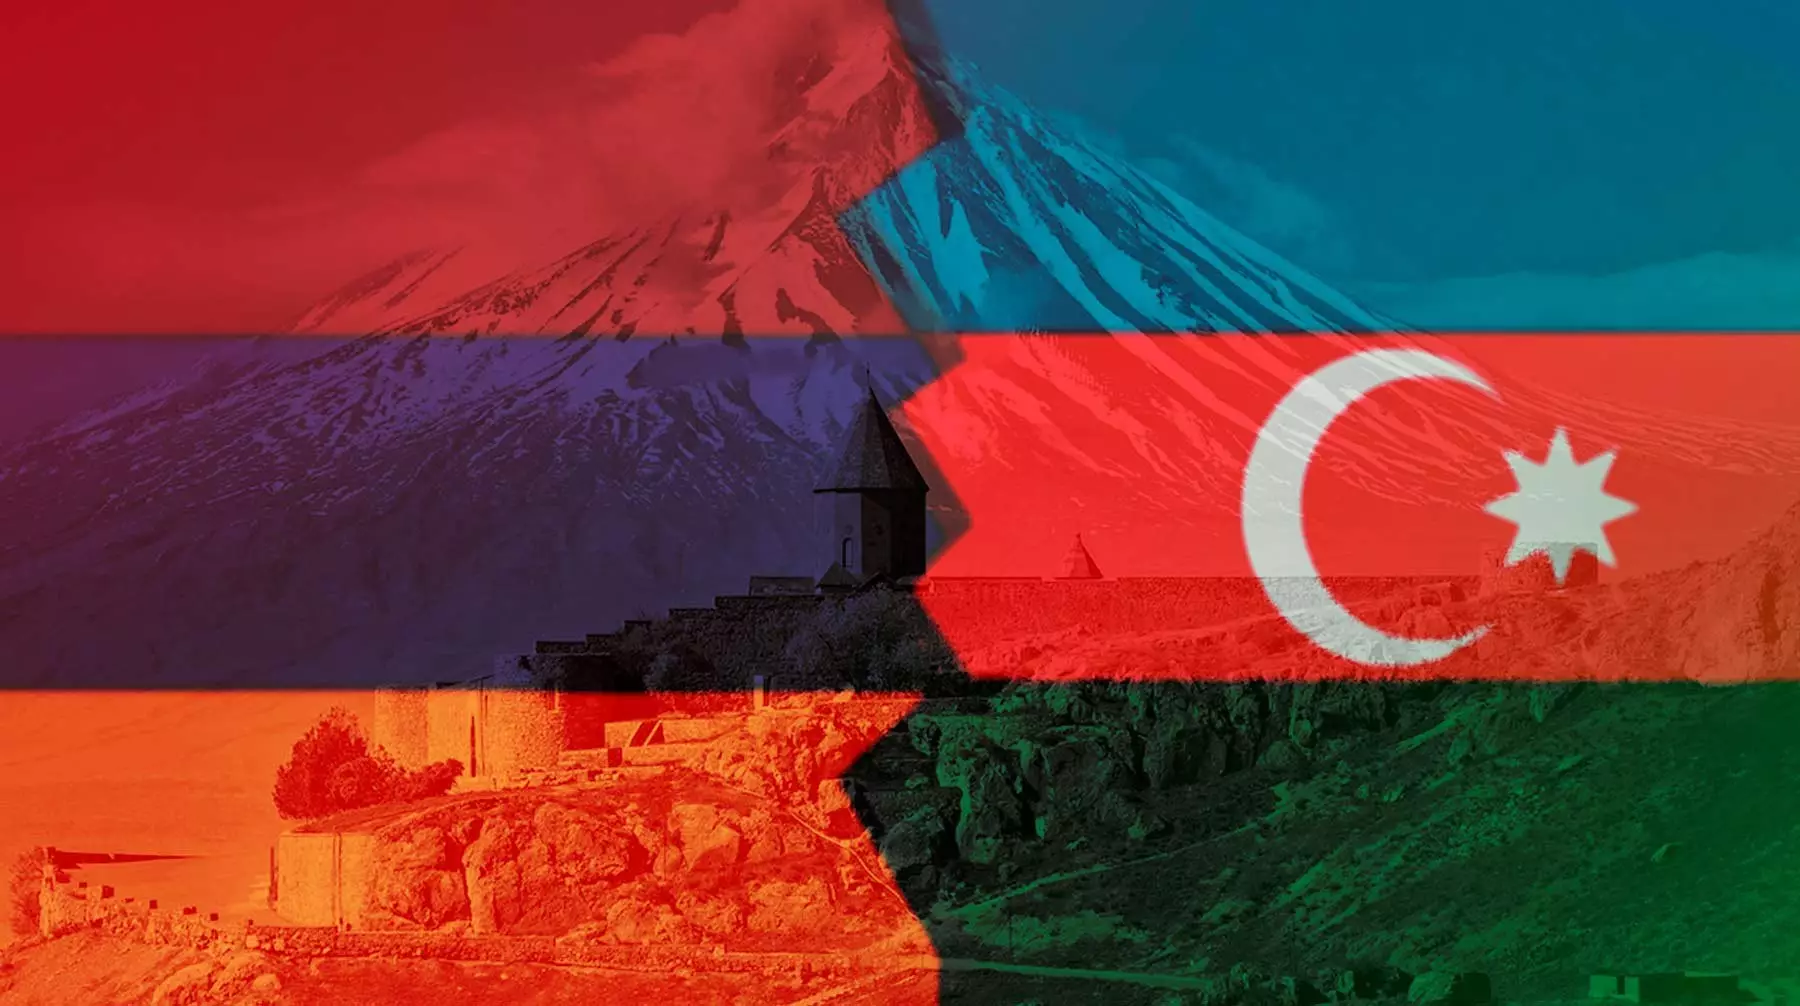 Армения и Азербайджан проведут переговоры в Алматы